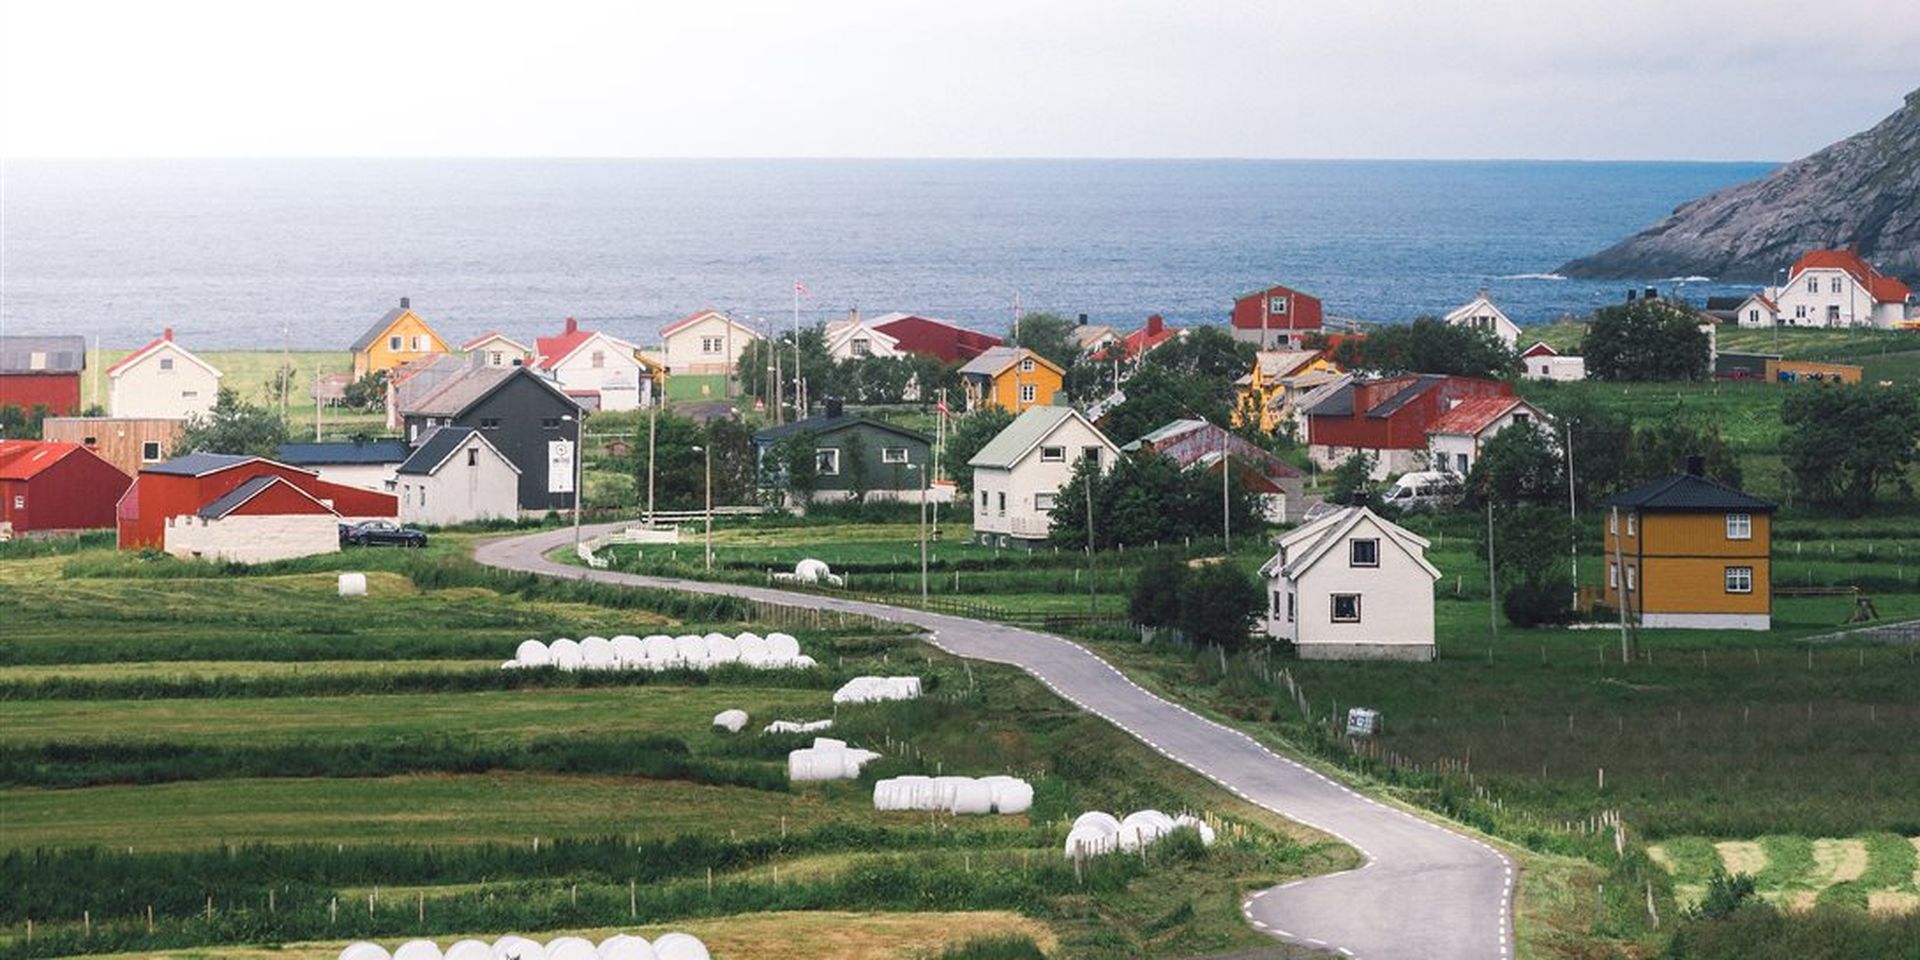 Utsikt over et boligområde ved sjøen. Grønne jorder og små hus. Bilde.